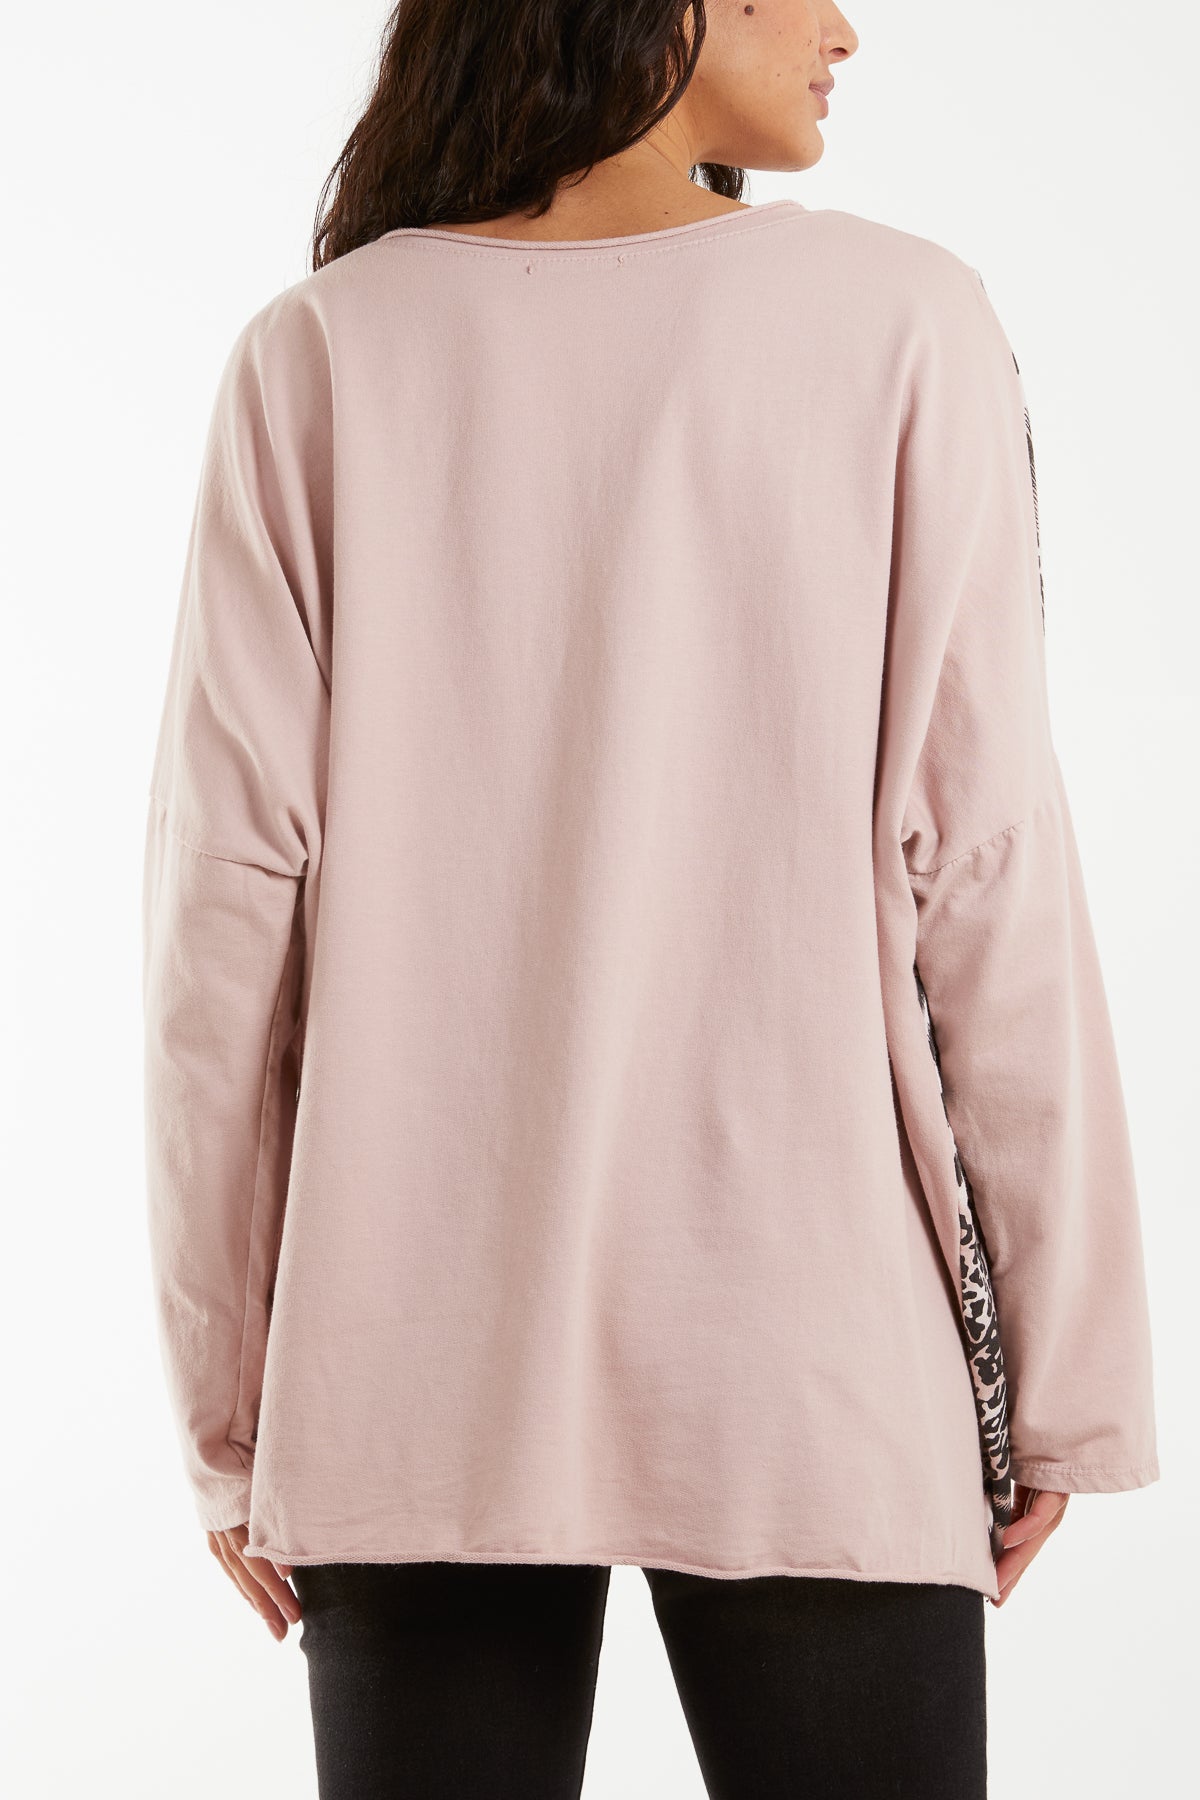 Mixed Animal Design Long Sleeve Sweatshirt